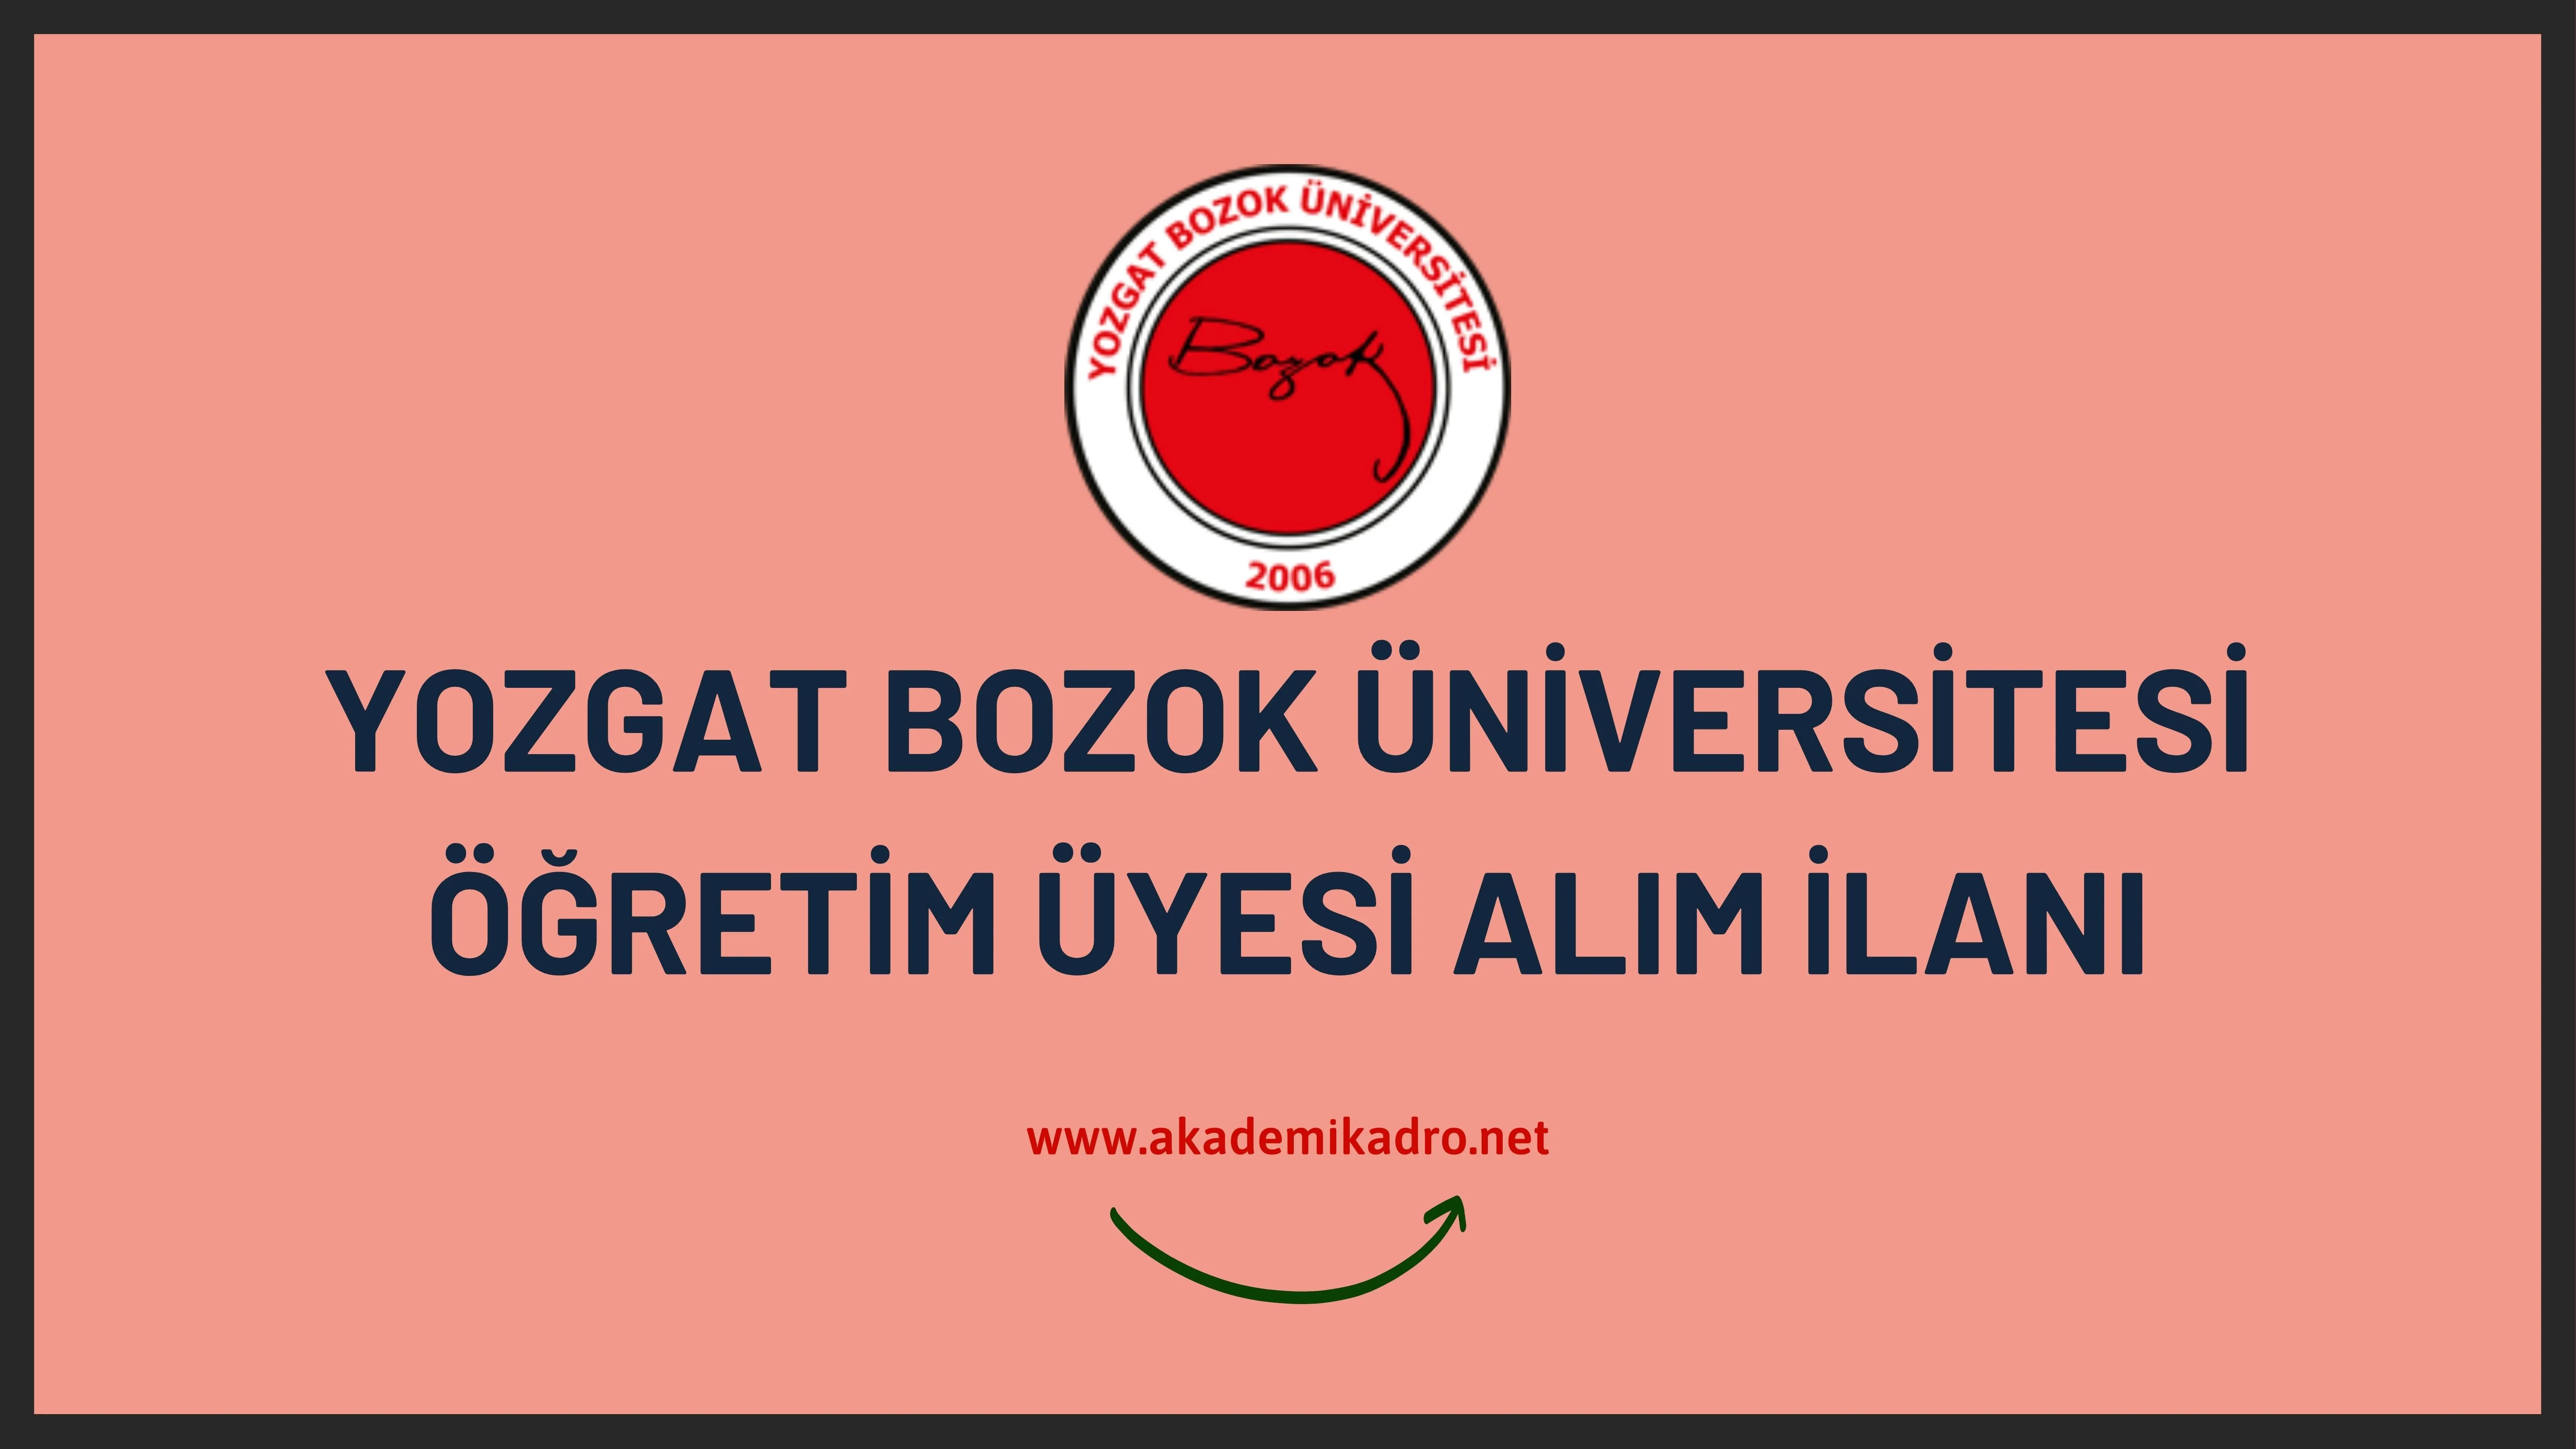 Yozgat Bozok Üniversitesi birçok alandan 26 Öğretim üyesi alacak.